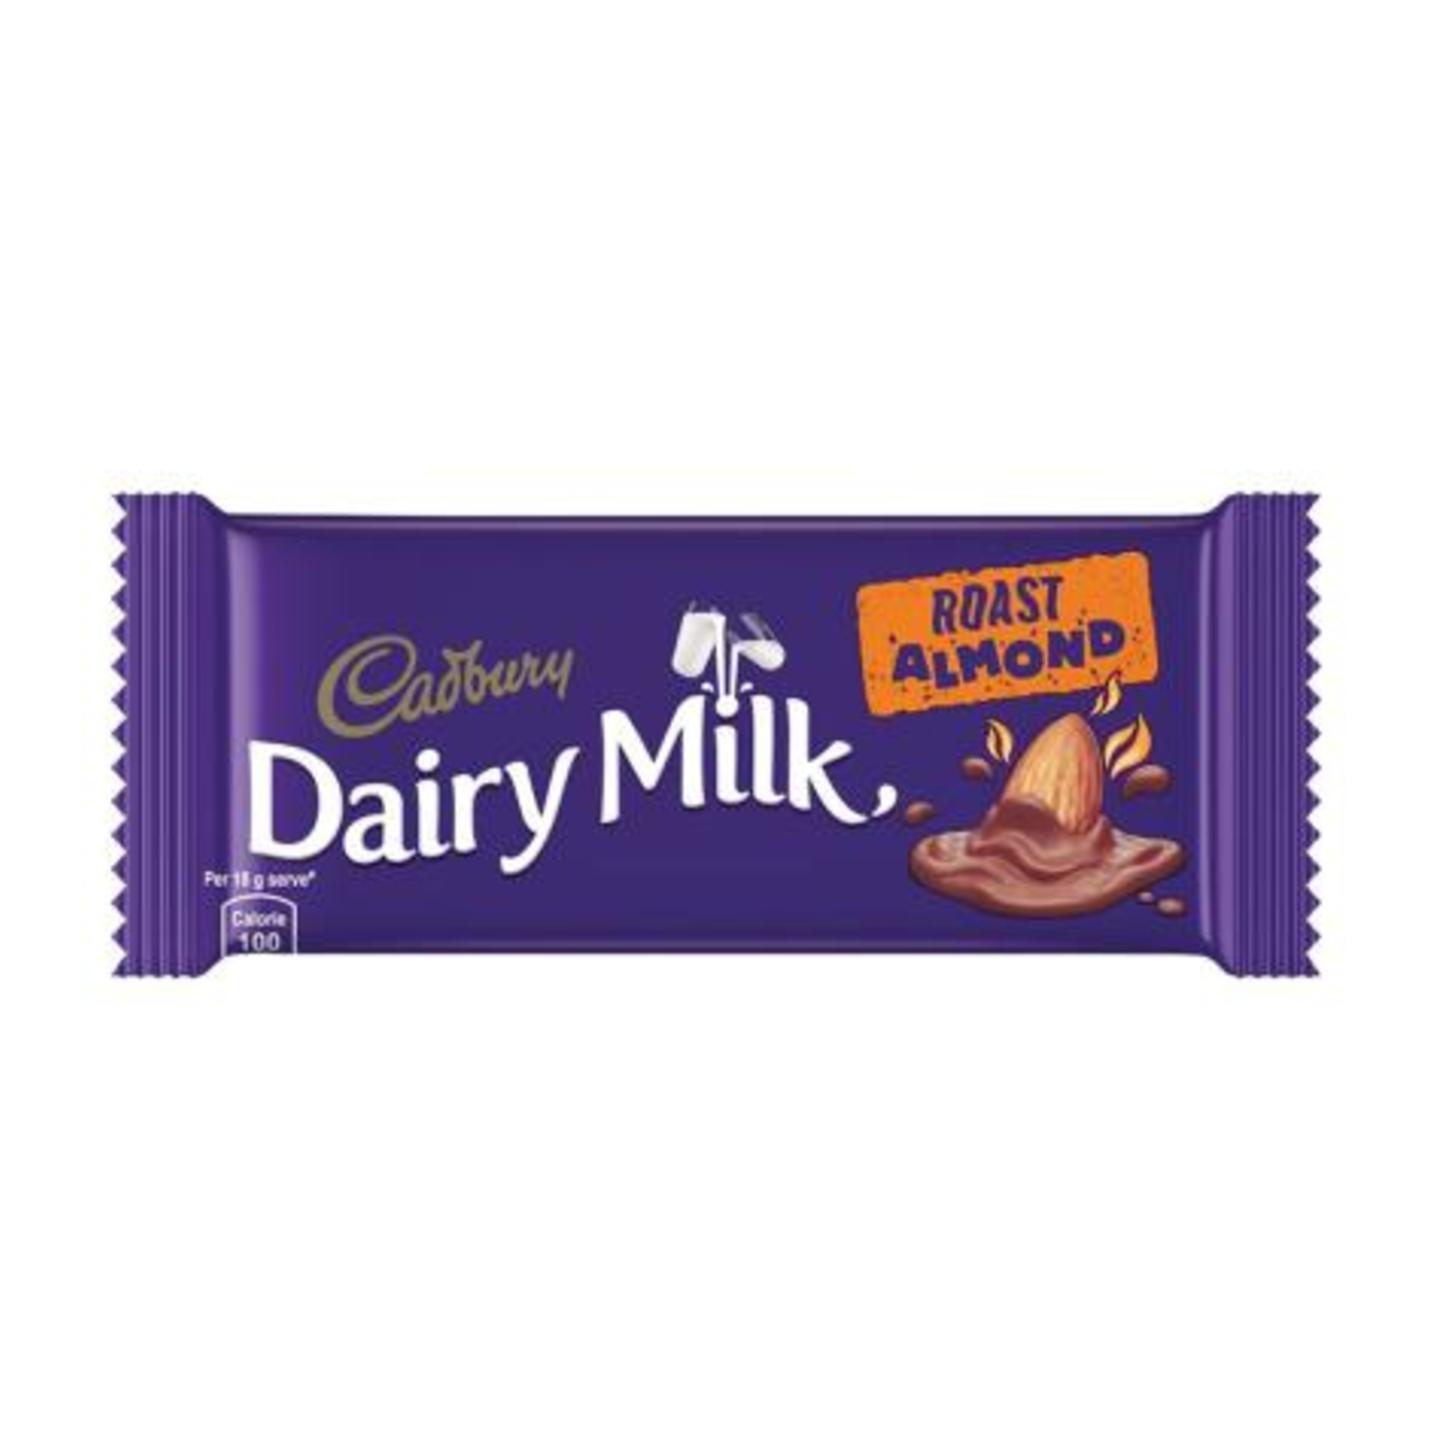 Cadbury Dairy Milk Roast Almond Chocolate 36 g